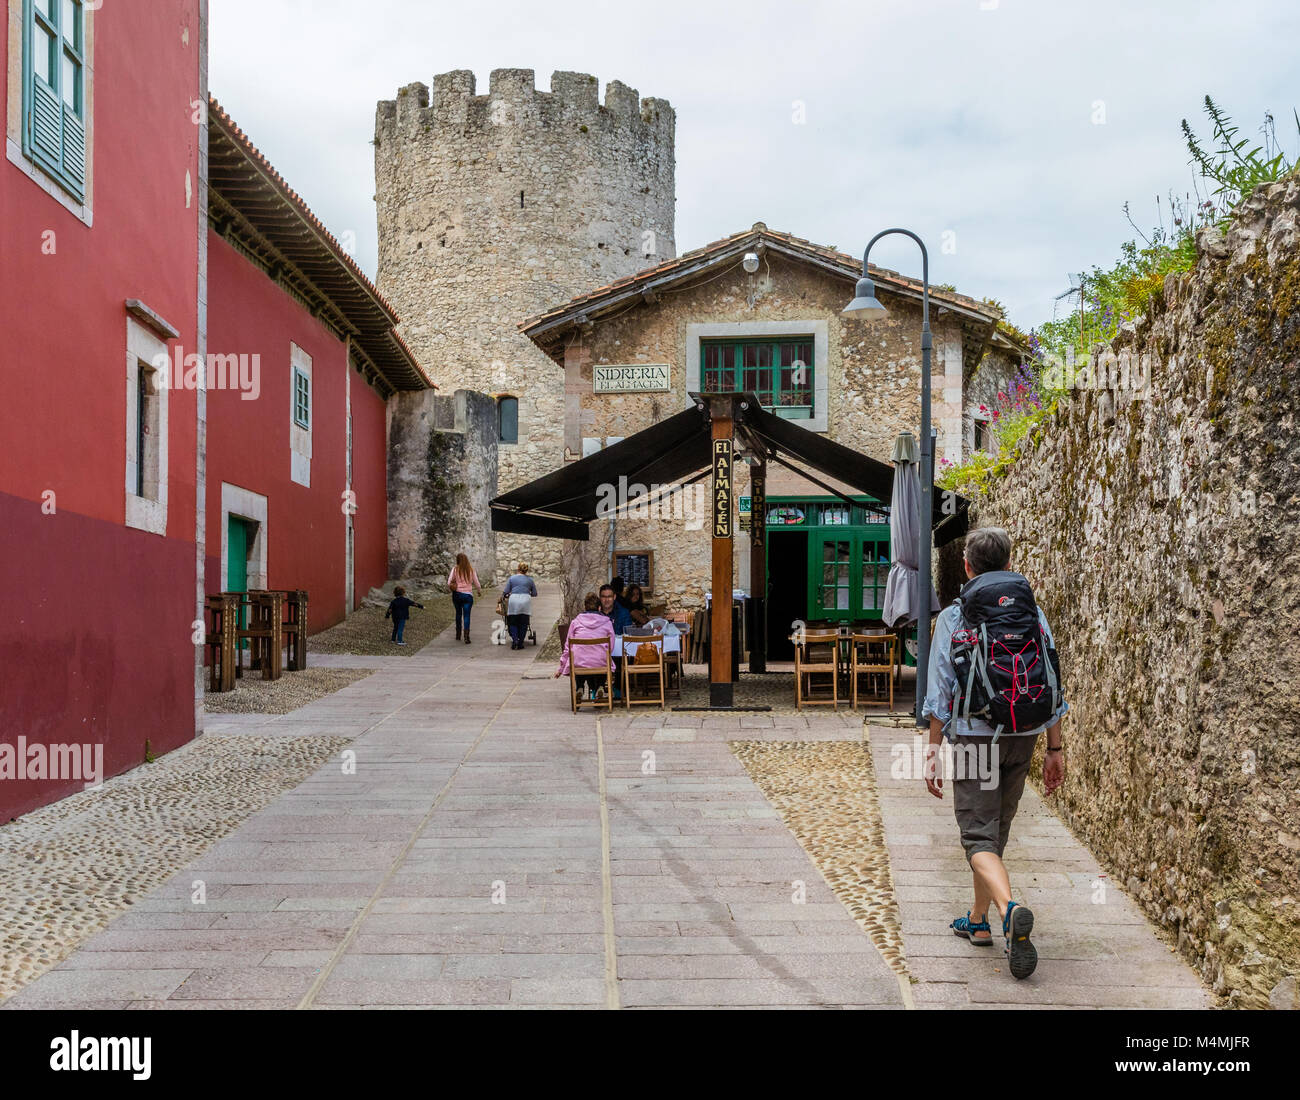 Sac à dos femme marche vers une Sidreria ou cider house et le château dans la ville de Llanes, dans les Asturies au nord de l'Espagne Banque D'Images